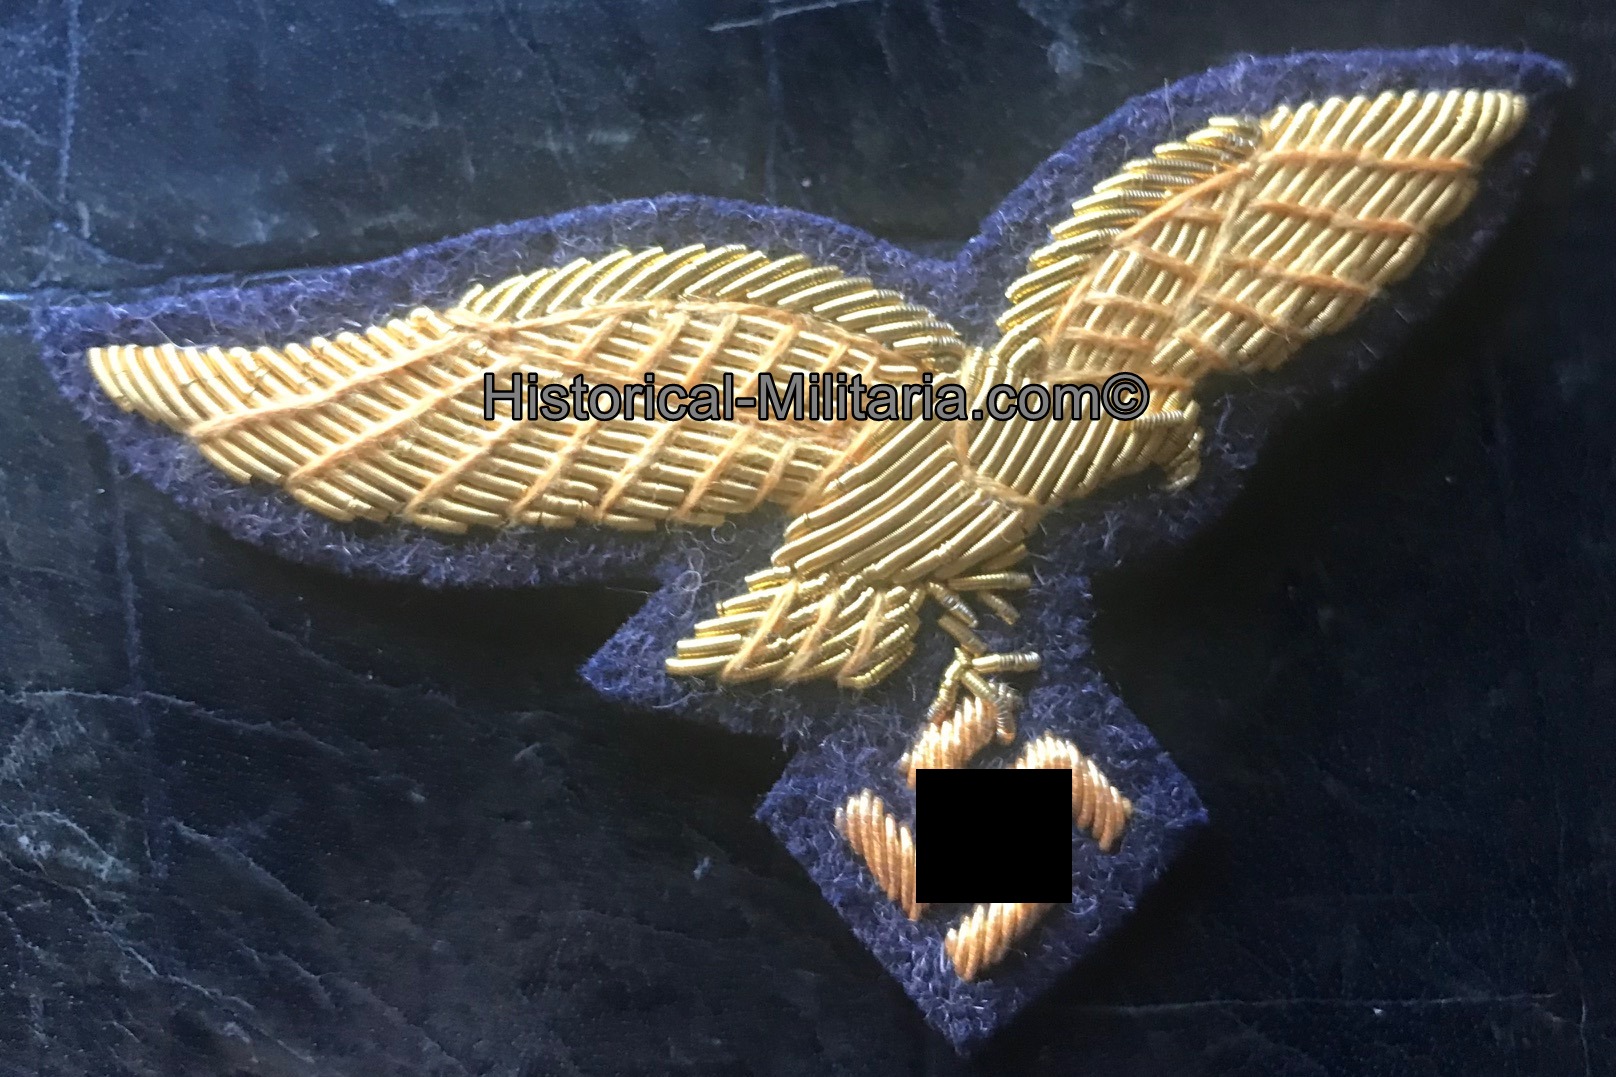 Luftwaffe General cap eagle in gold on greyblue - Luftwaffe General Mützenadler auf graublau - Aquila da berretto da Generale della Luftwaffe su panno grigioblu